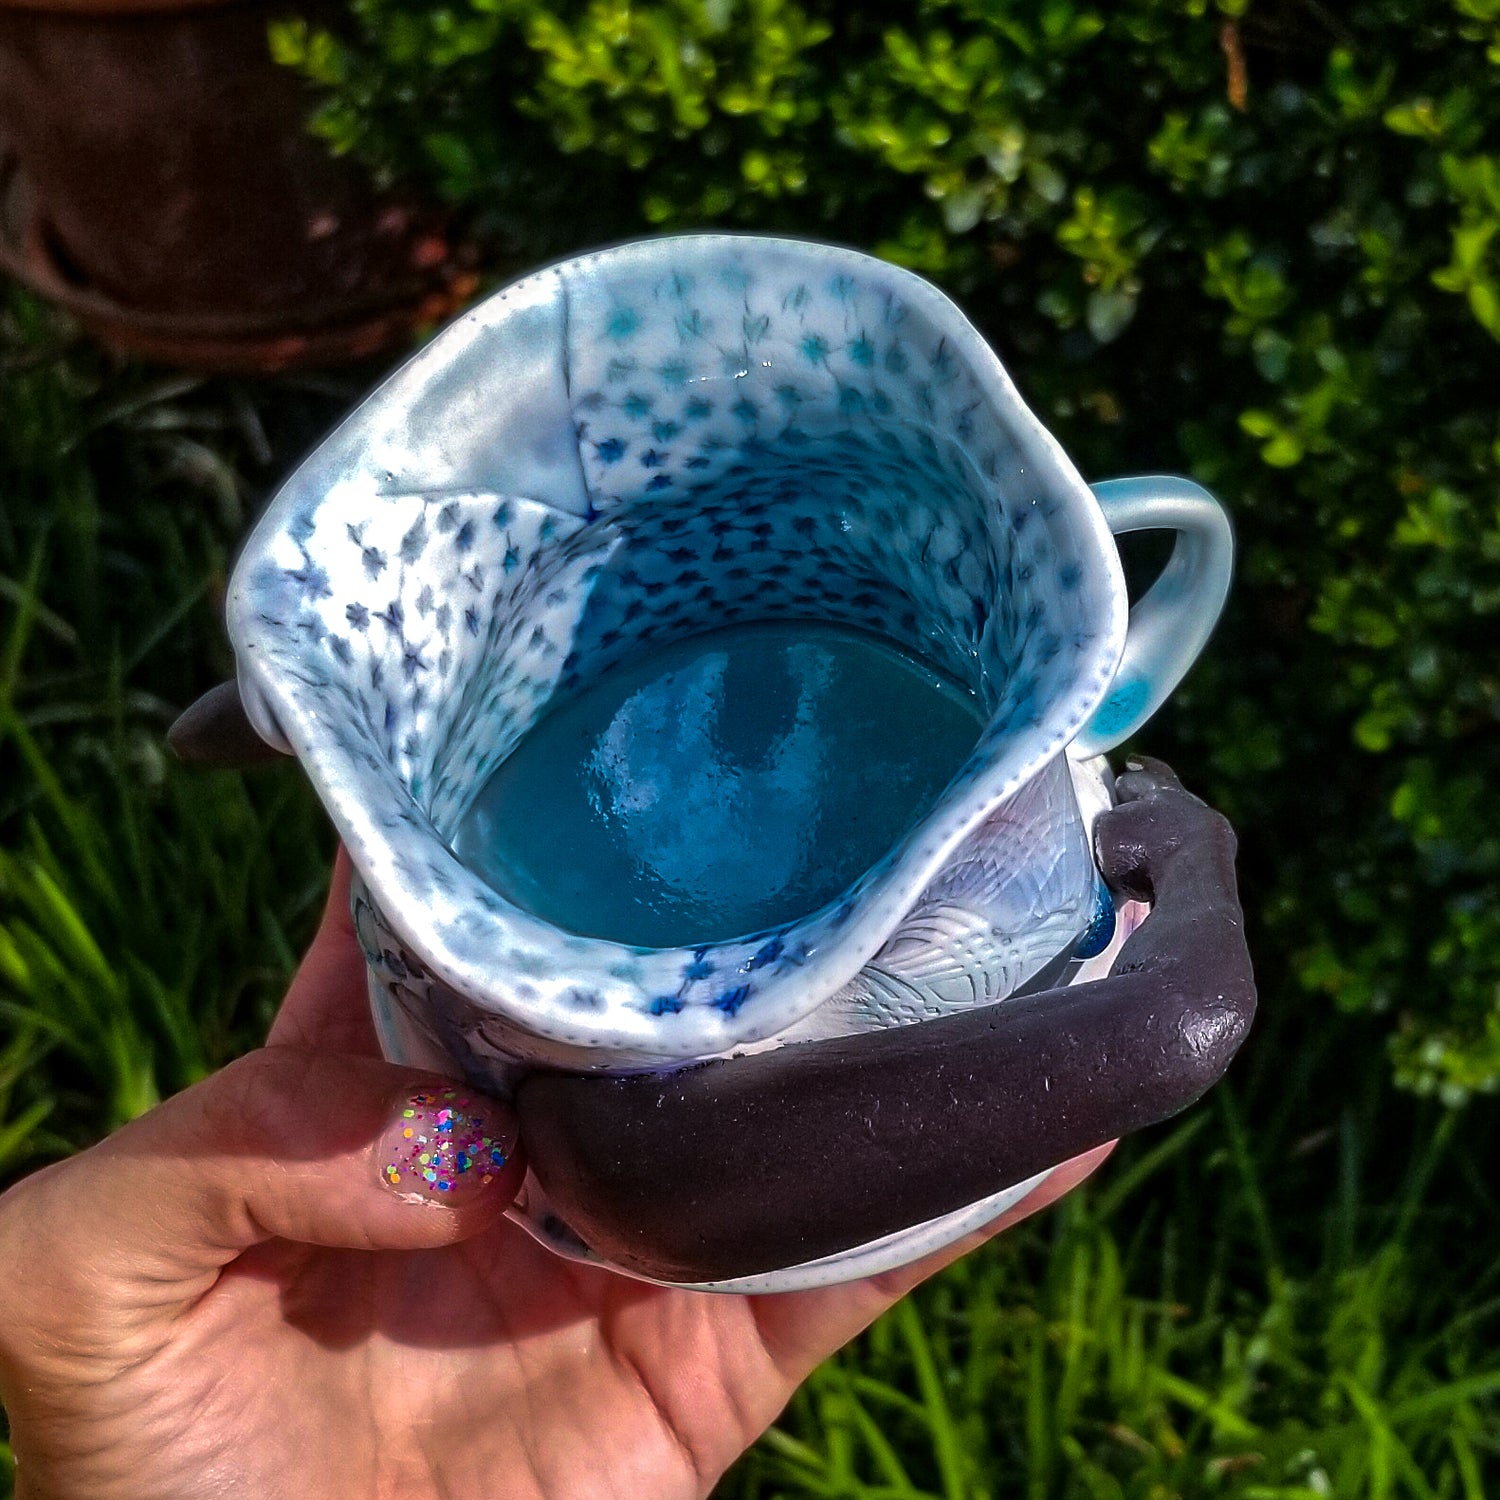 Inside detail of handmade porcelain mug with figurative sculptural elements